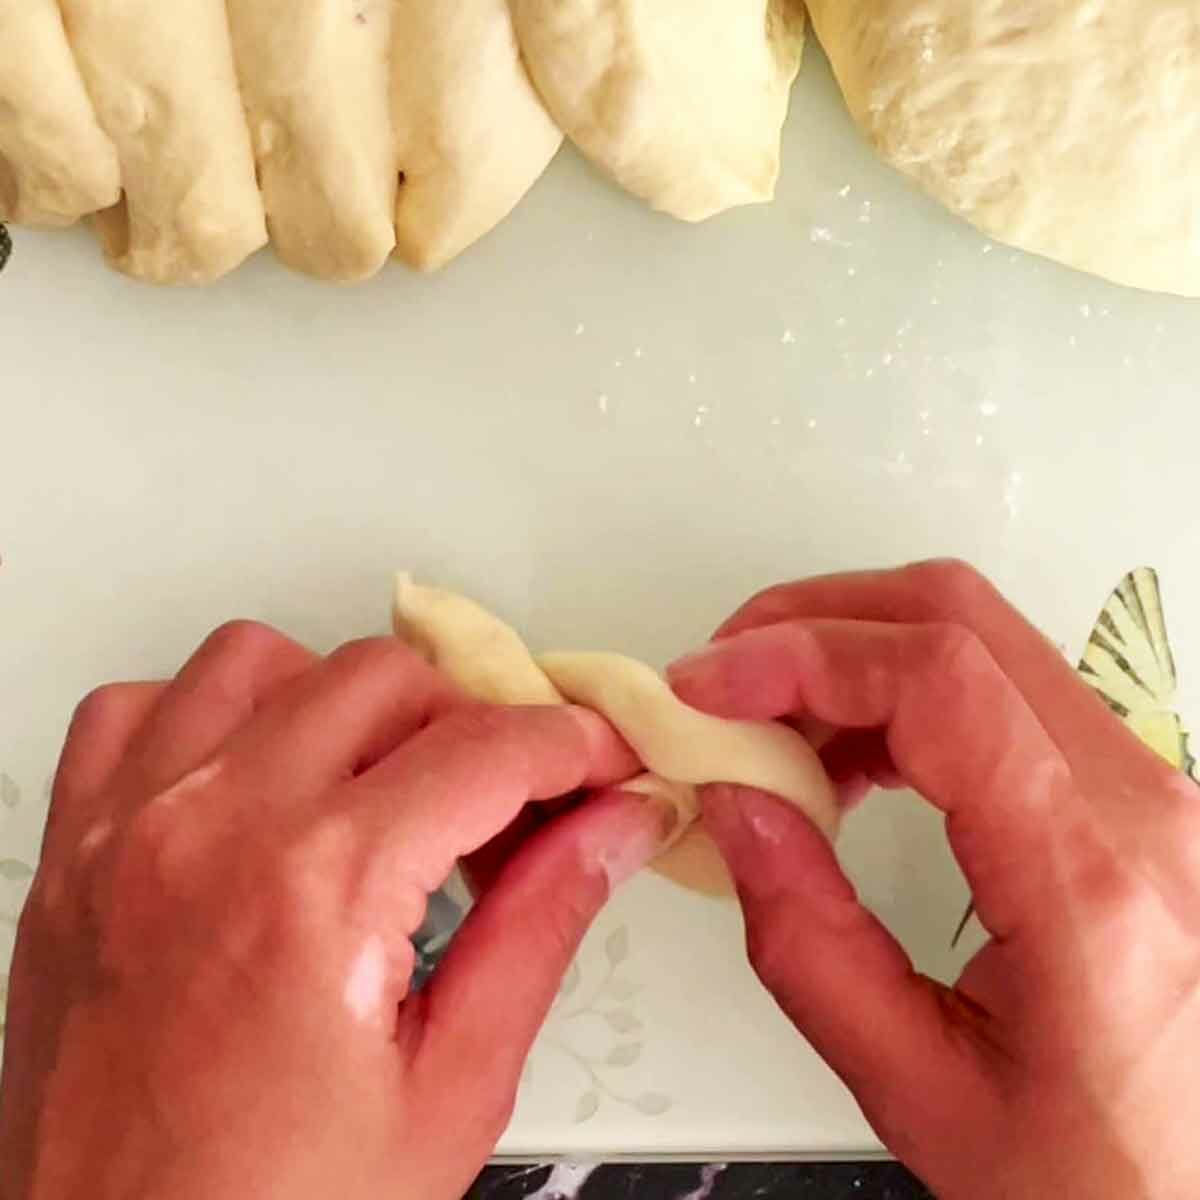 Making garlic knot.